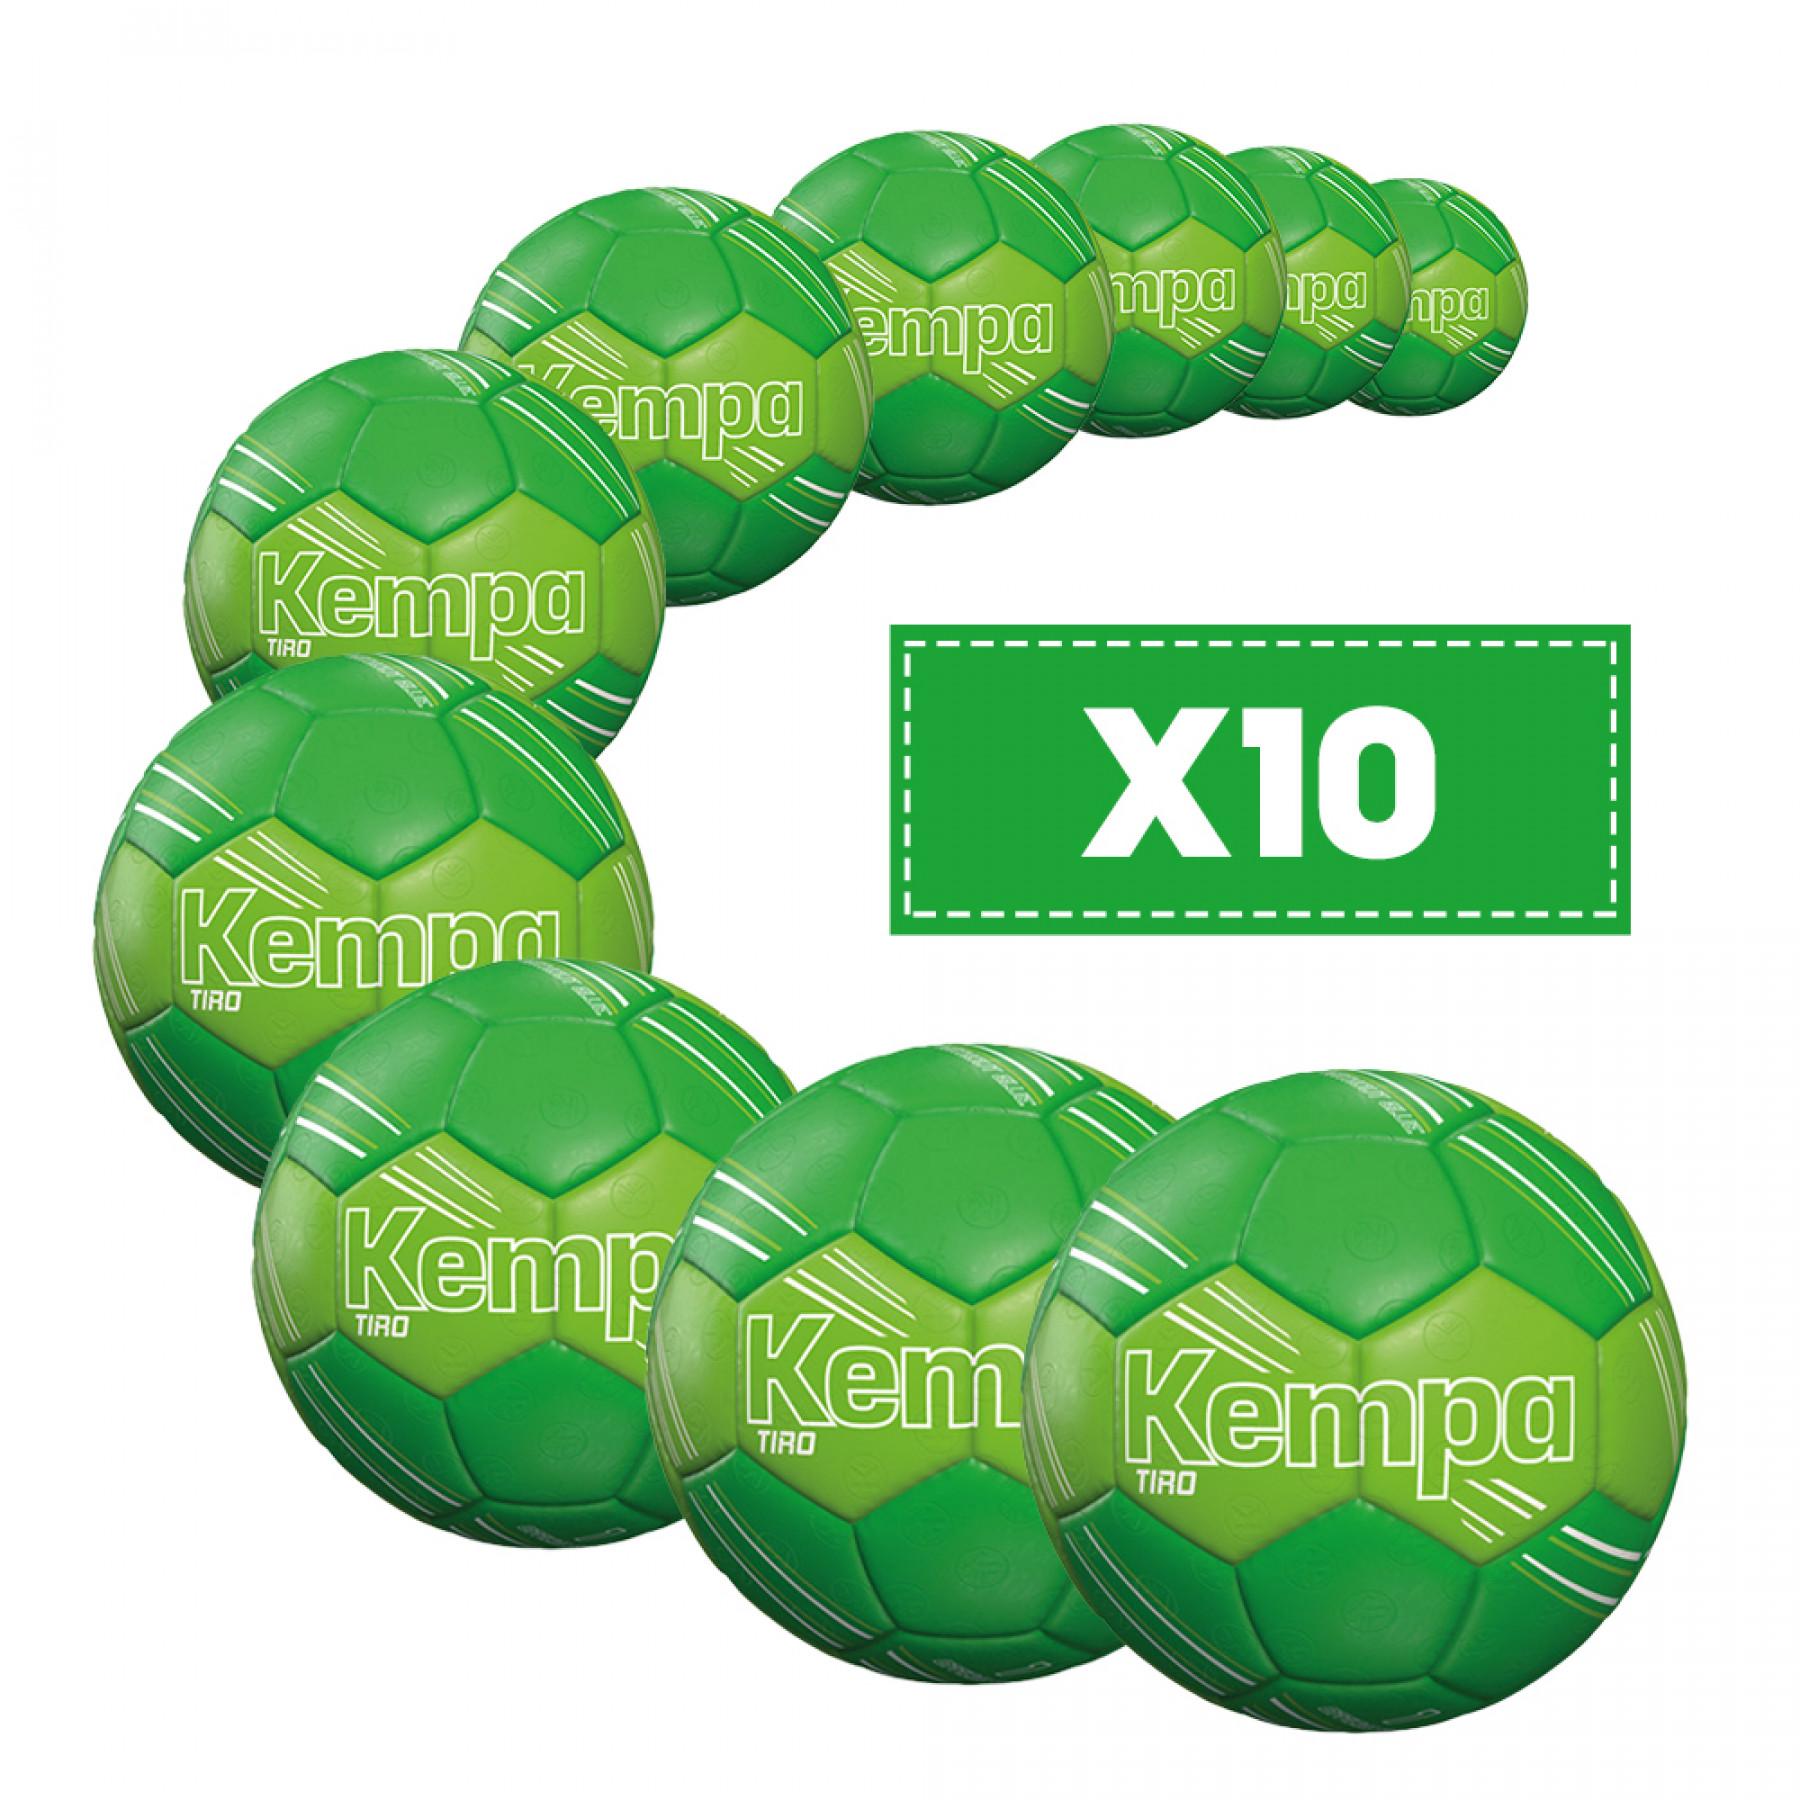 Opakowanie 10 balonów Kempa Tiro